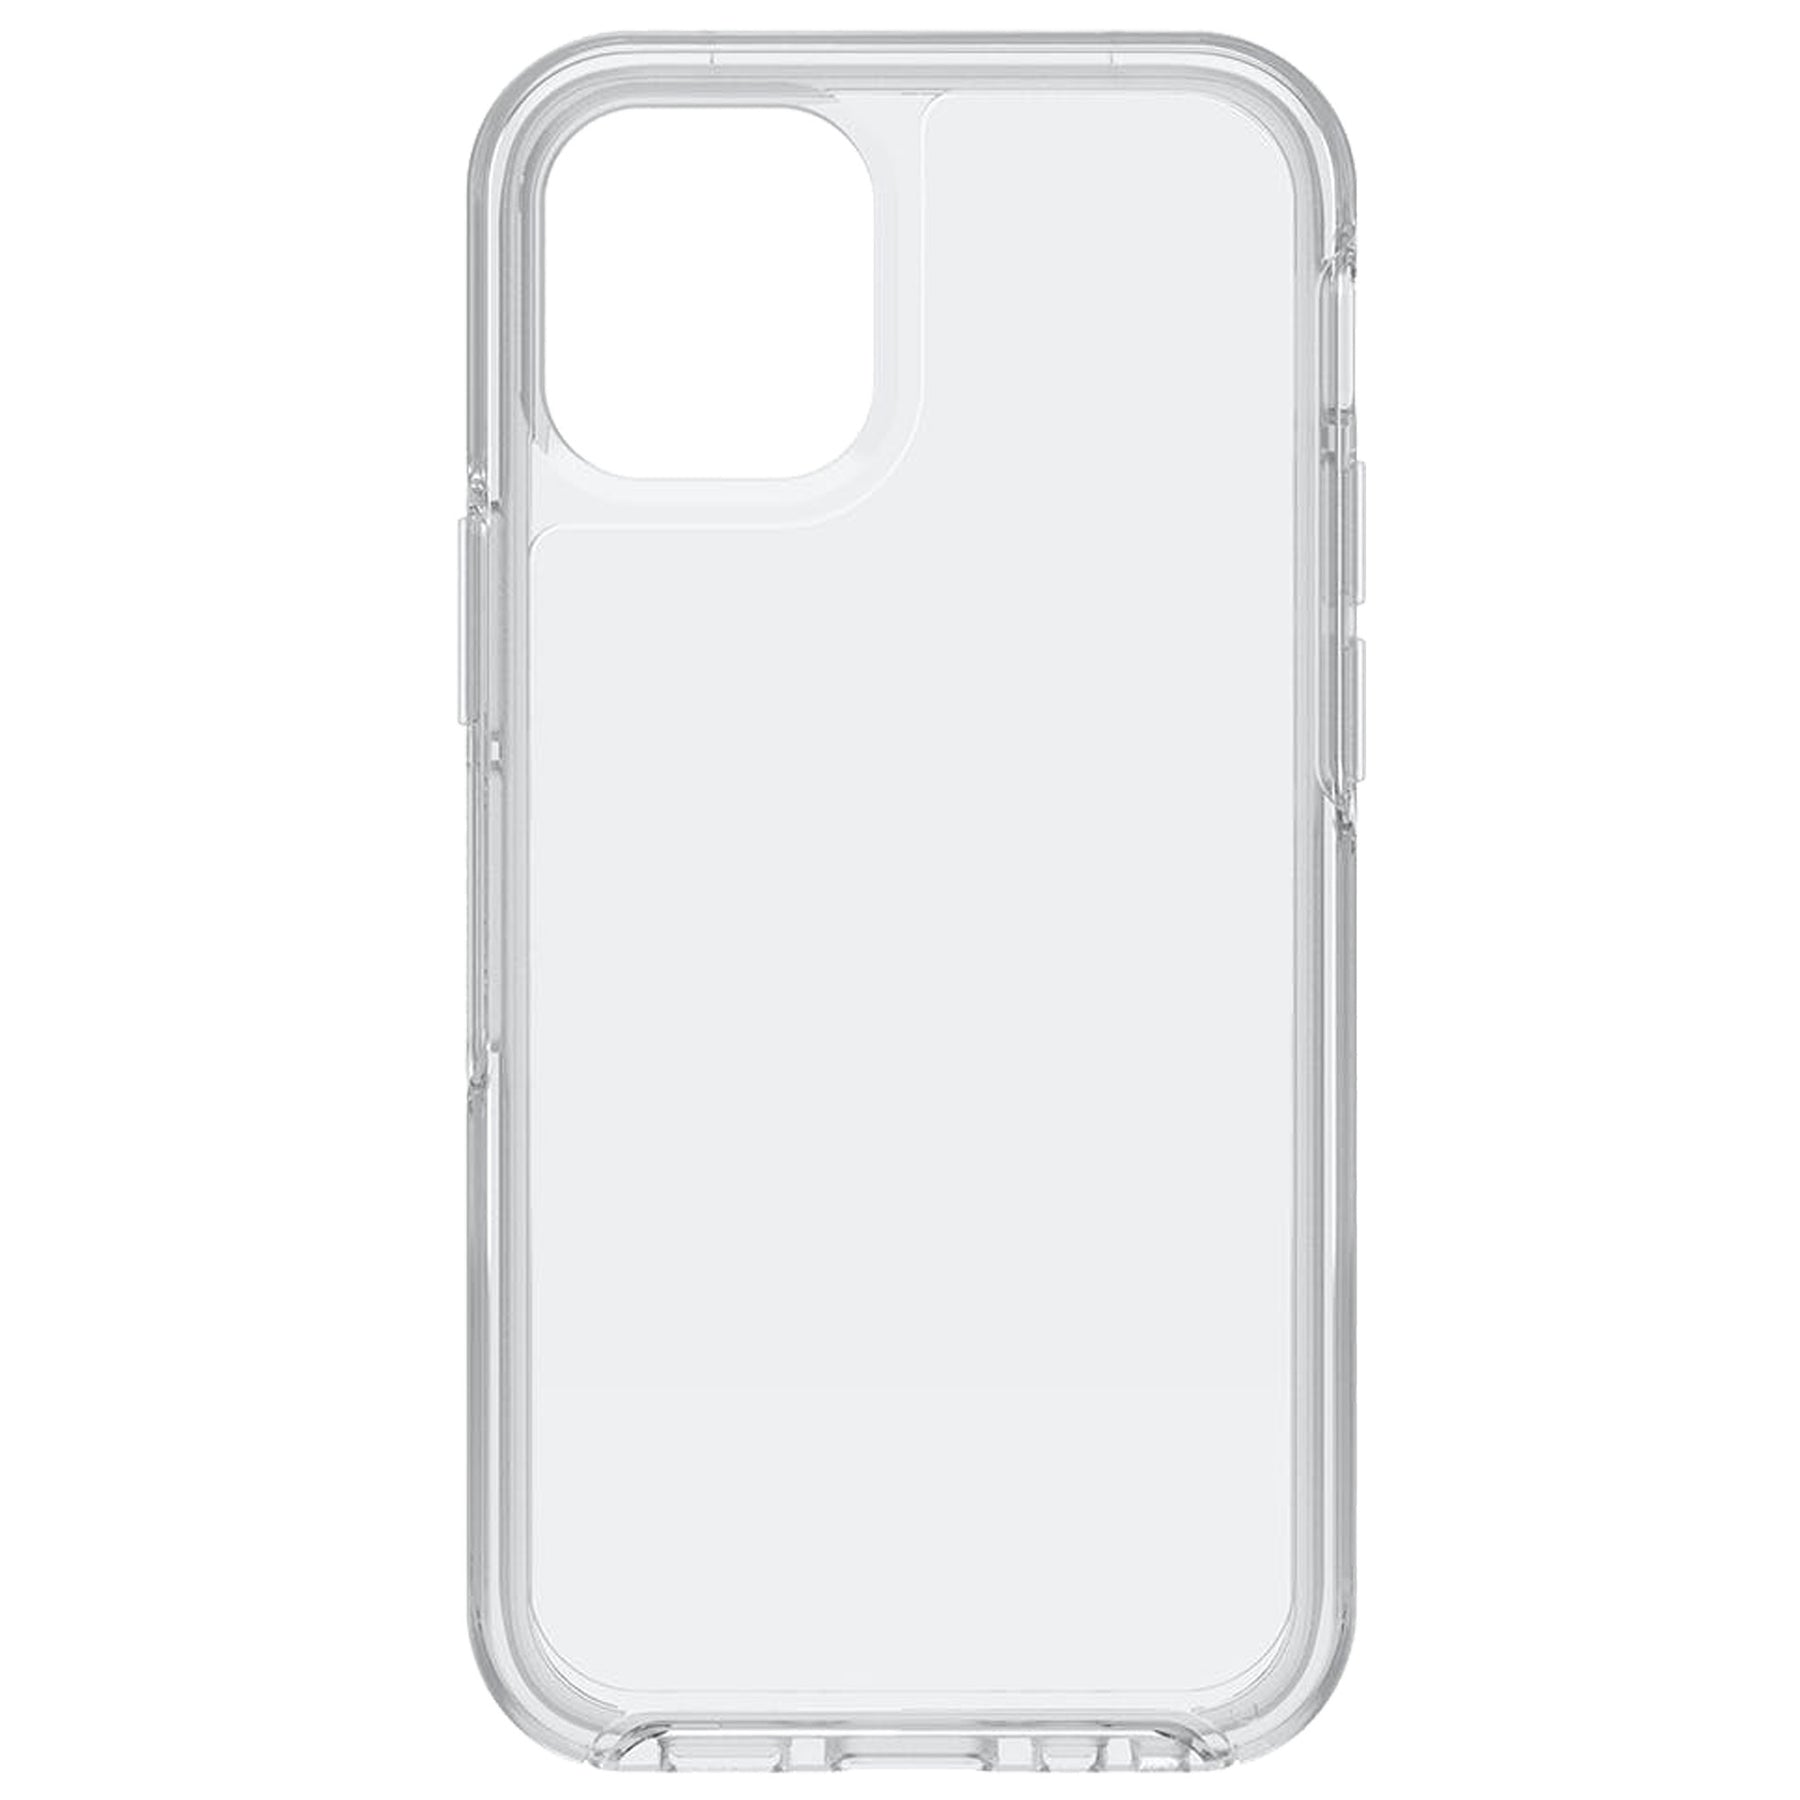 iphone 12 mini clear case